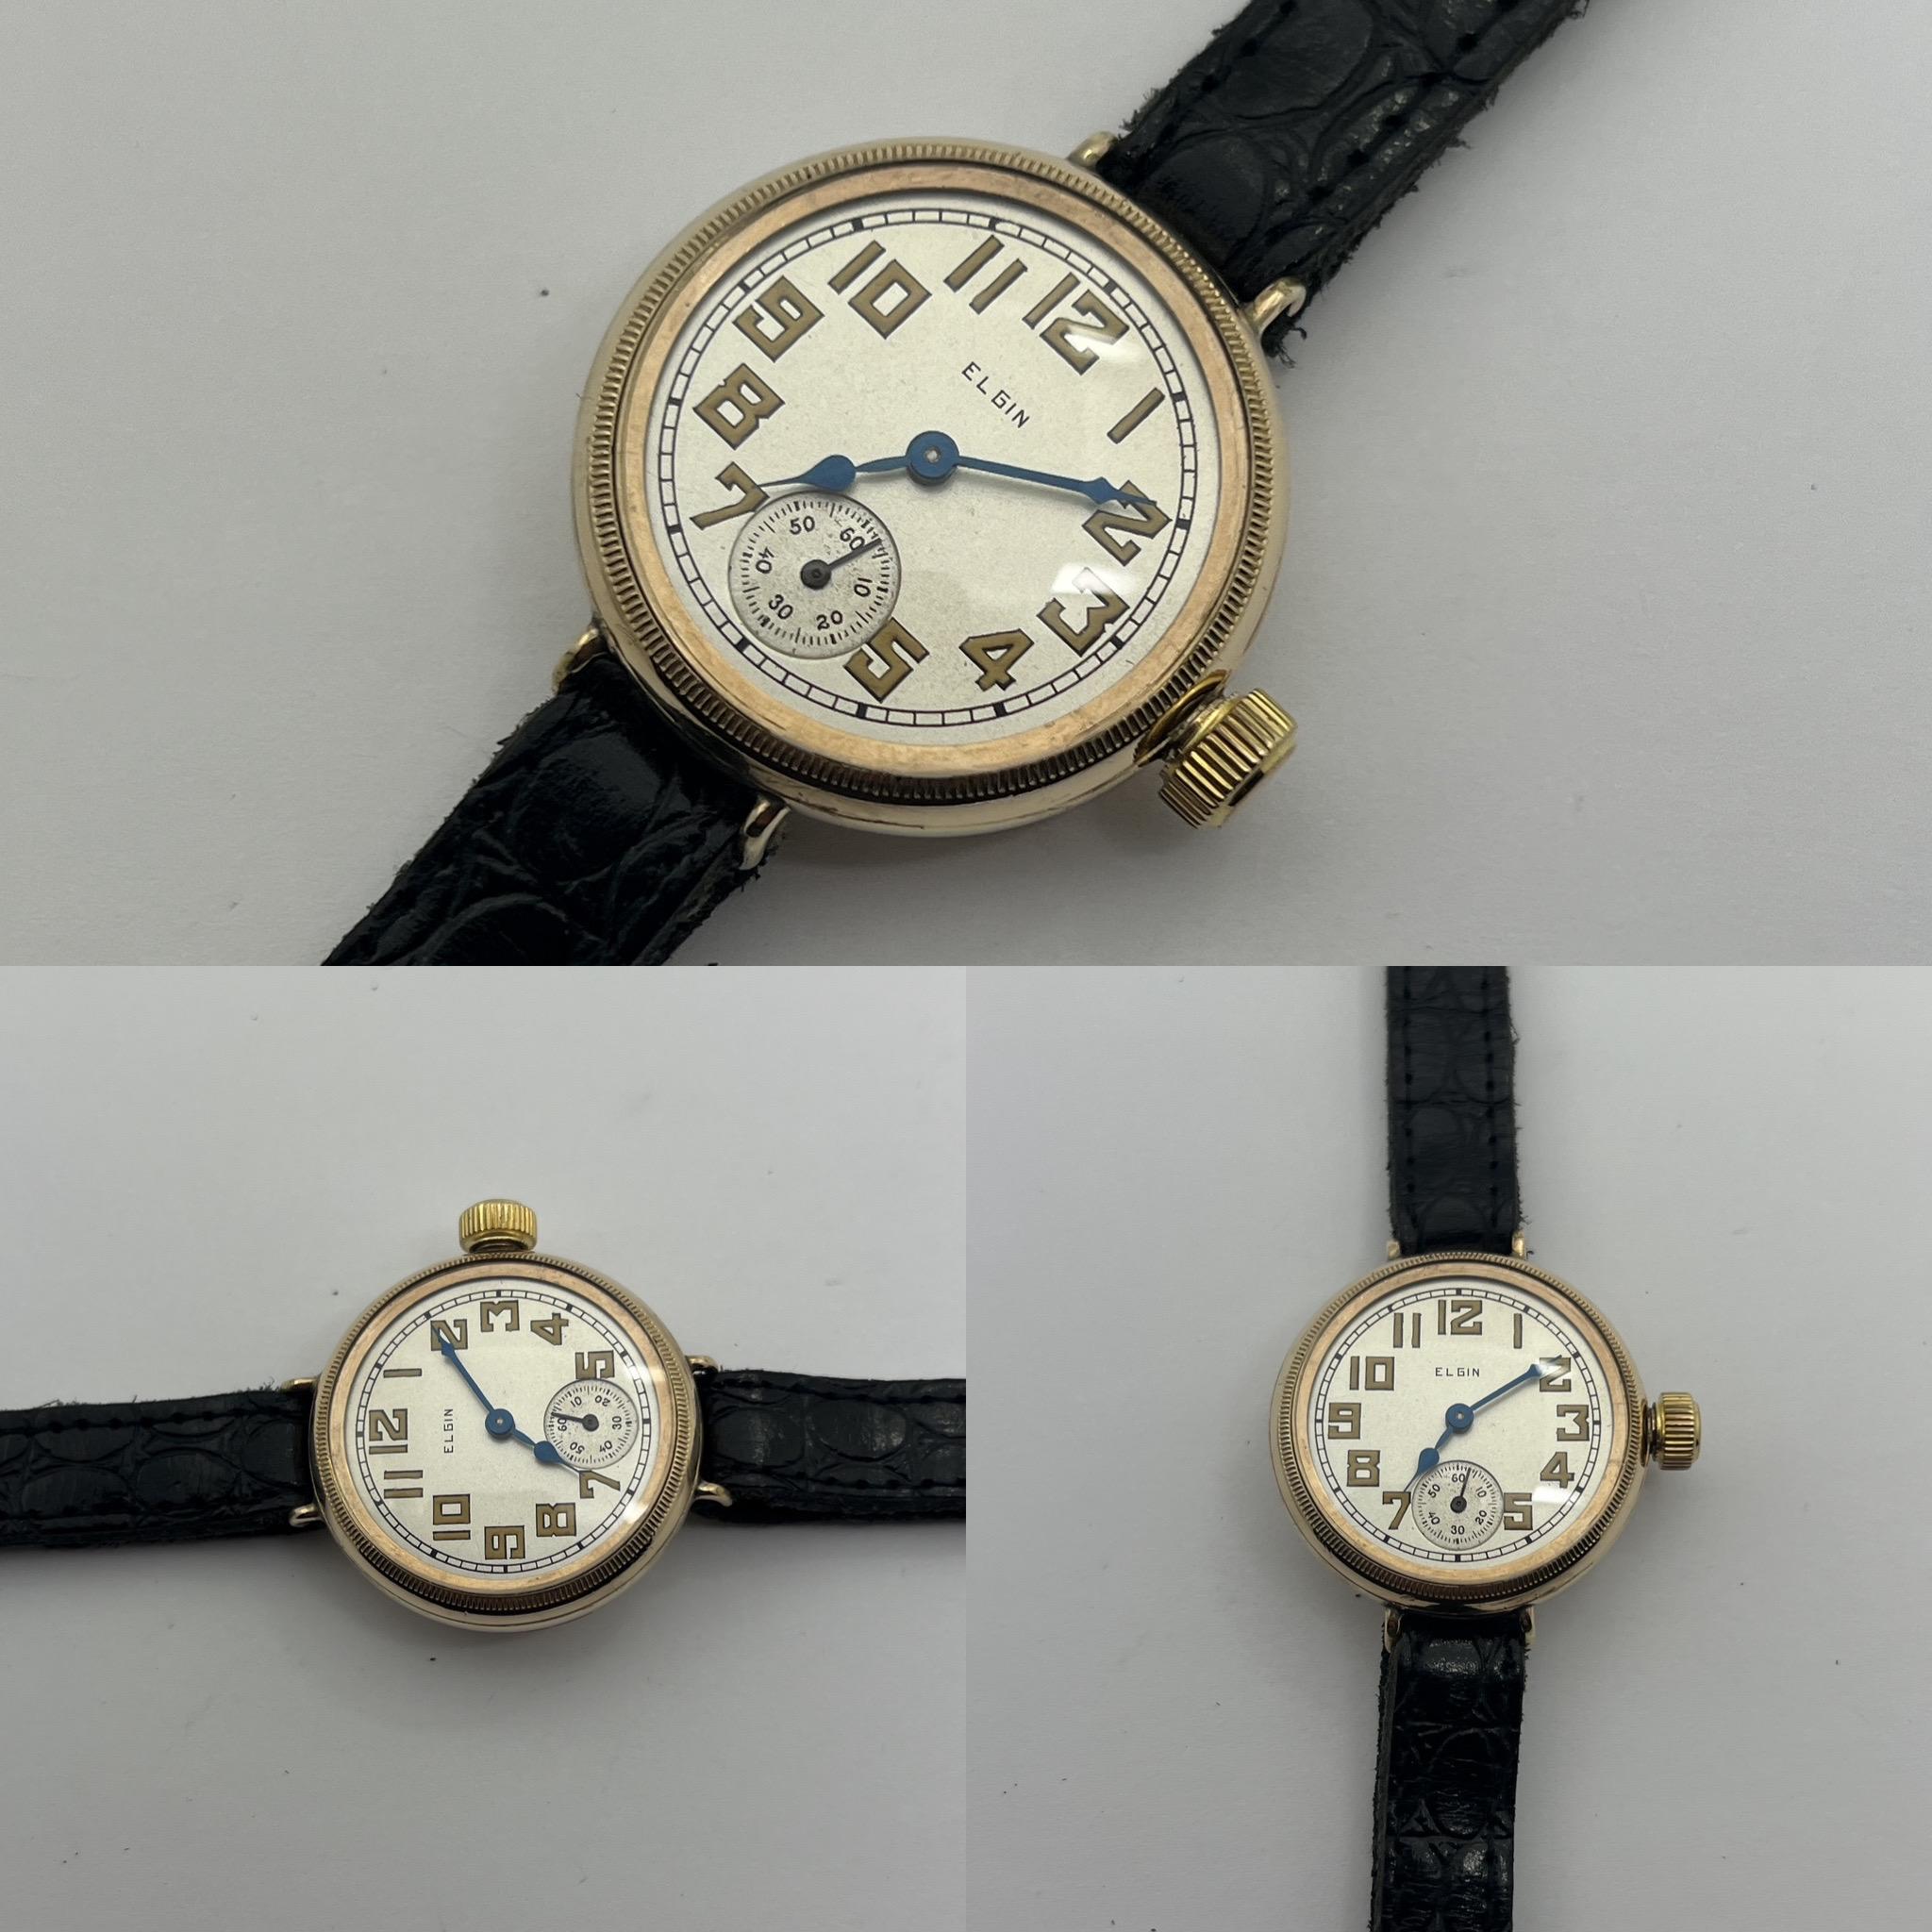 Hier ist ein weiteres großartiges Angebot von Vintage Watch Corner. Dies könnte man zwar als 